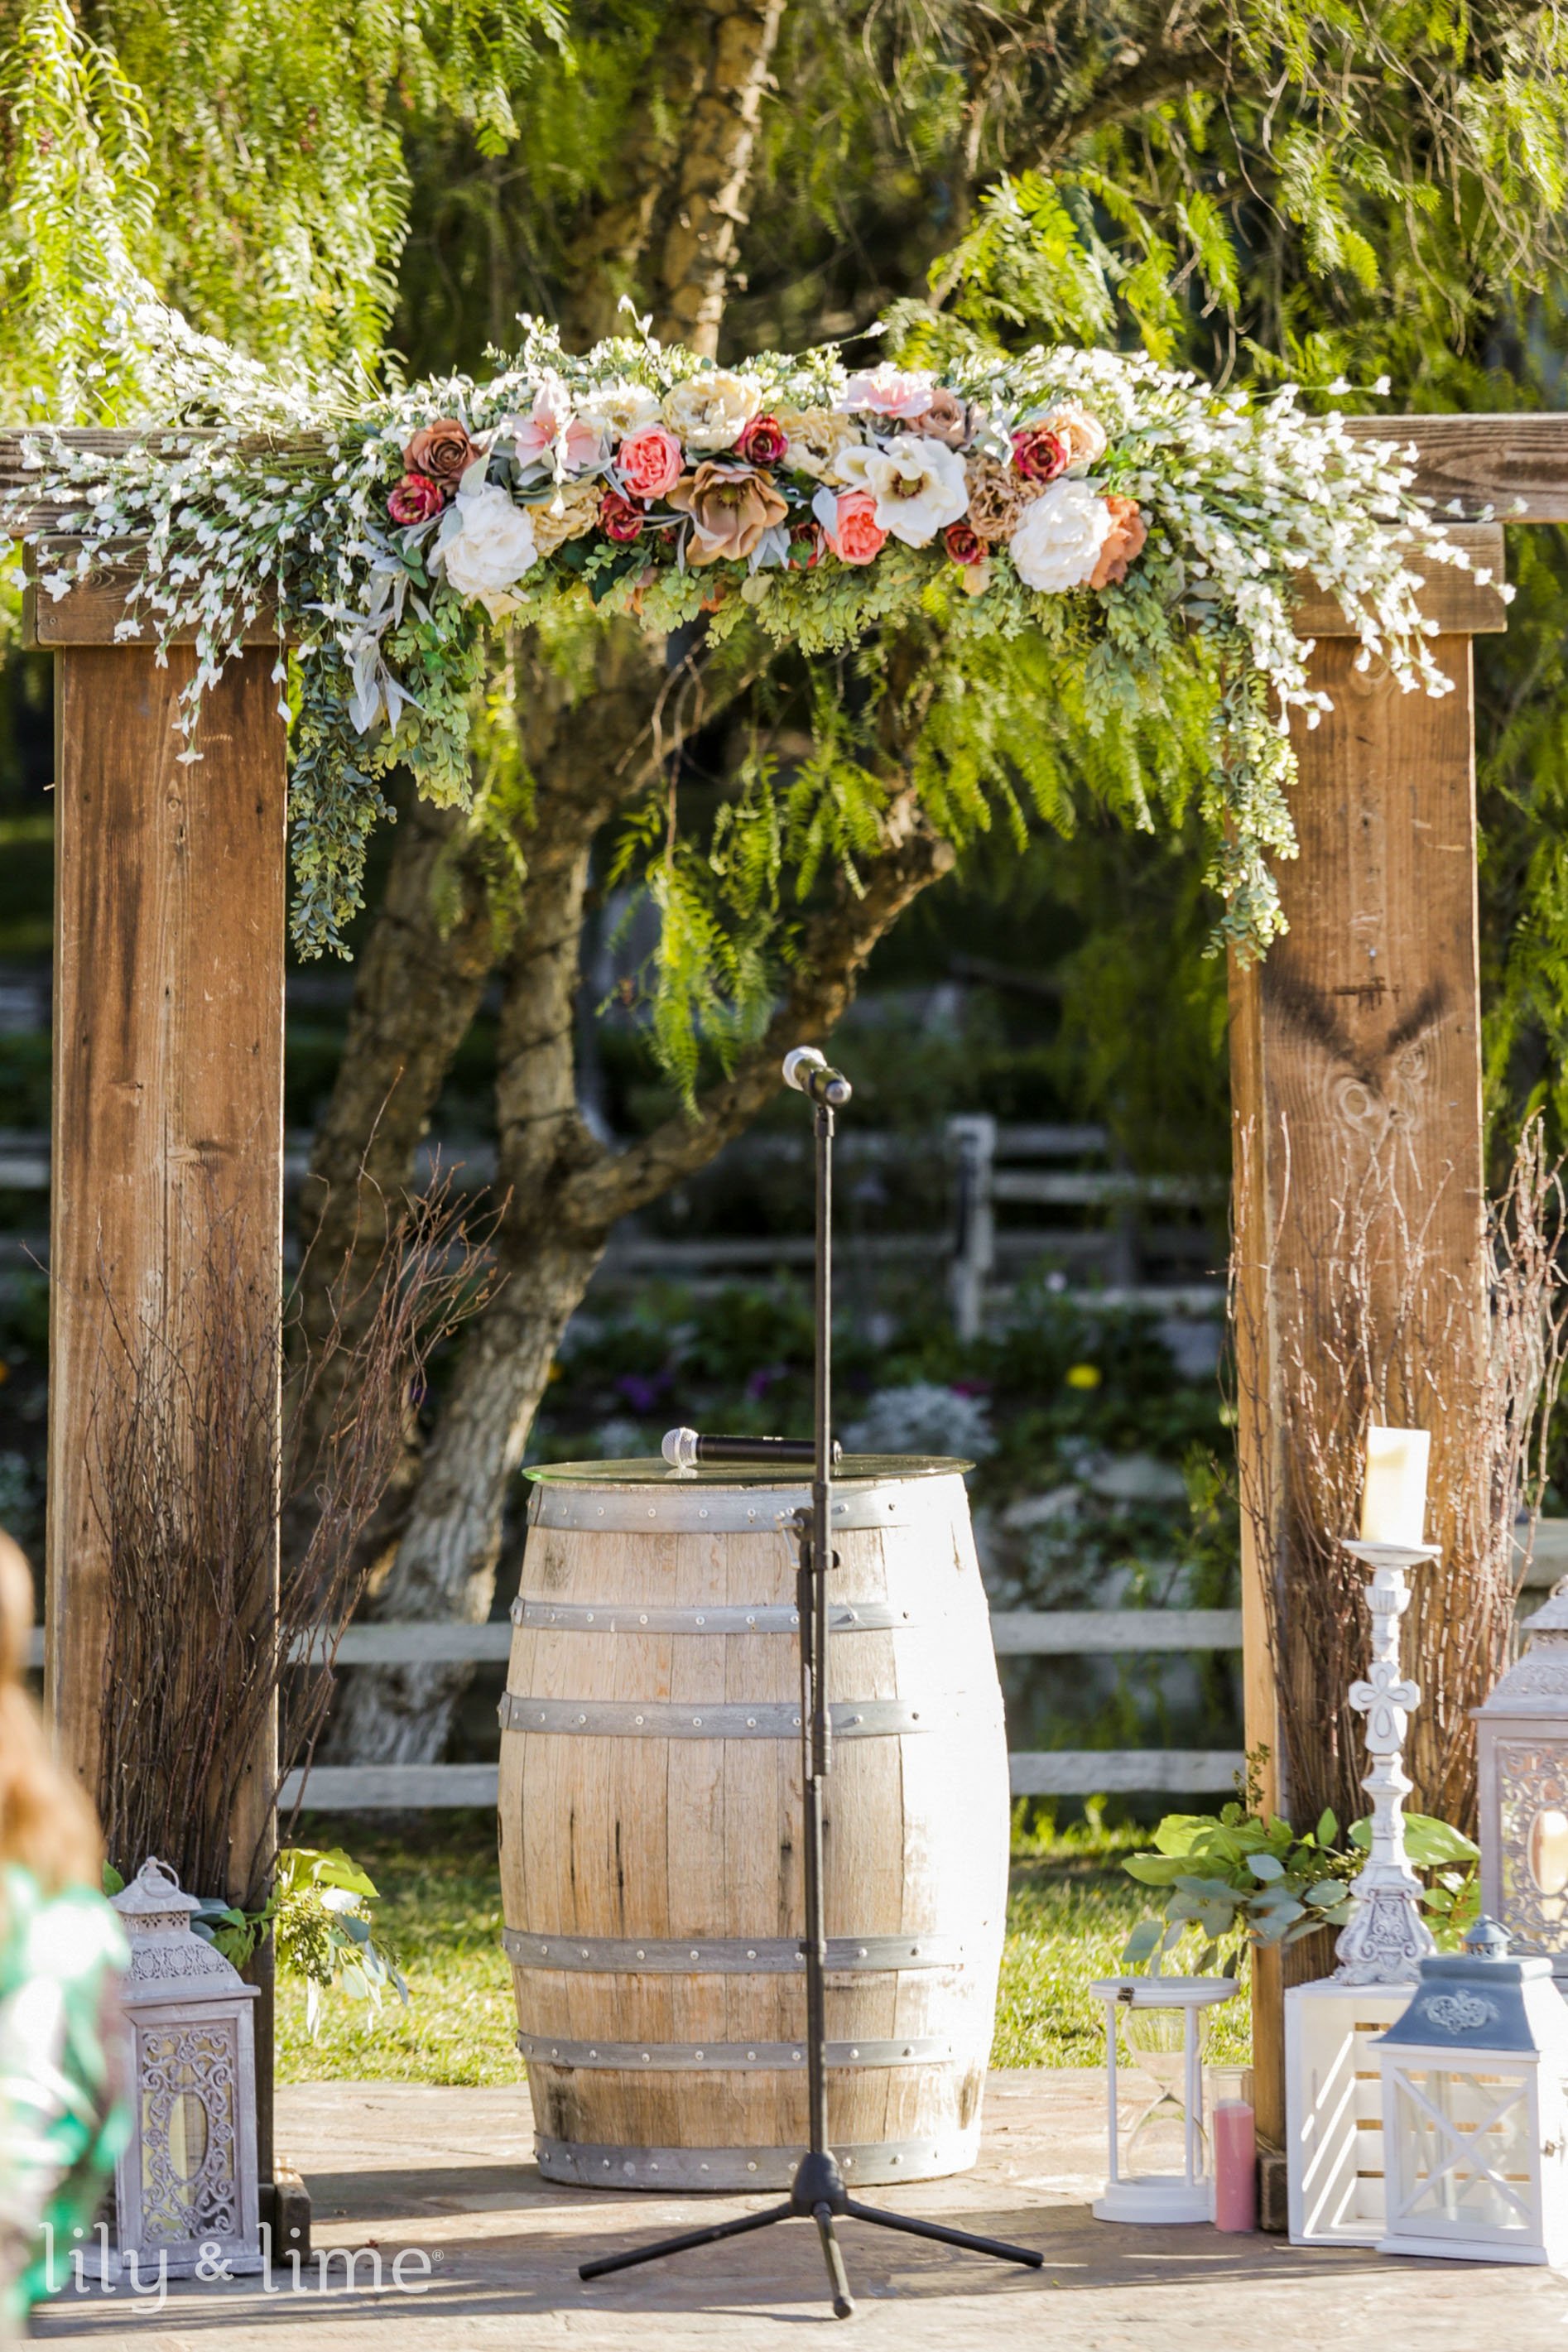 DIY Rustic Wedding - DIY Wedding Ideas, Invitations, Flowers for a Rustic  Country Wedding